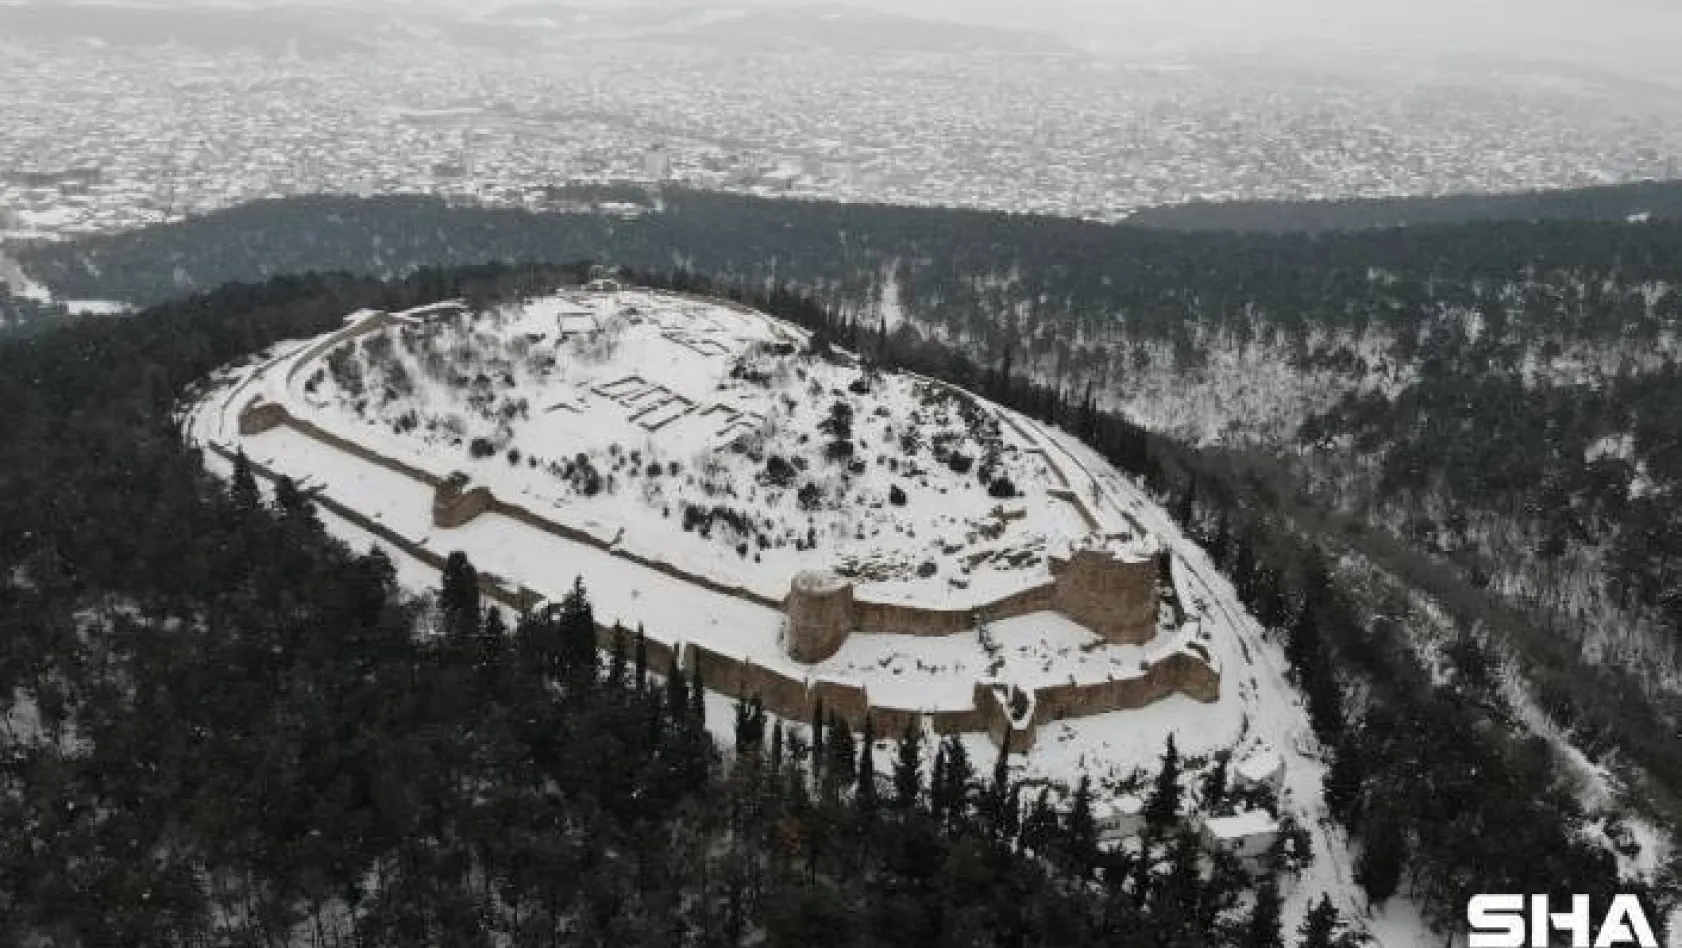 (ÖZEL)Tarihi Aydos Kalesi'nde kar yağışı kartpostallık görüntüler oluşturdu